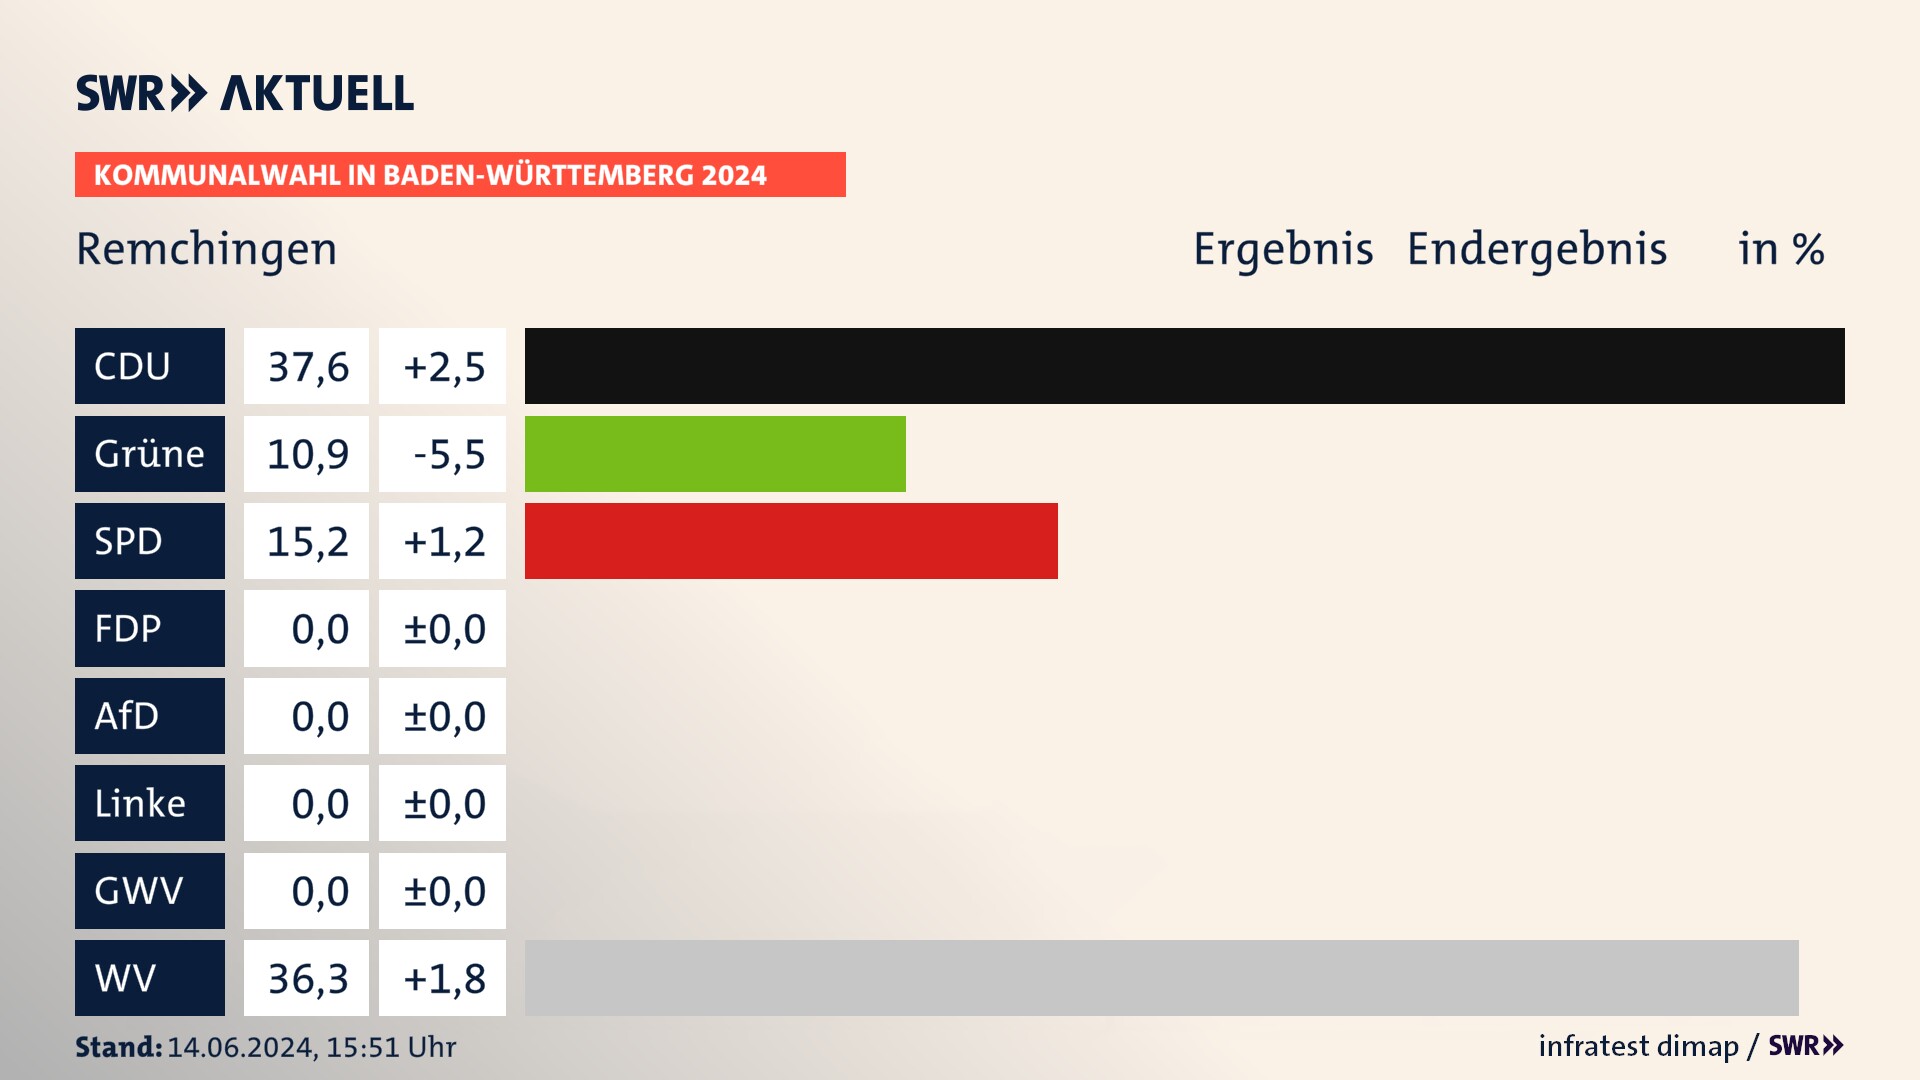 Kommunalwahl 2024 Endergebnis Zweitstimme für Remchingen. In Remchingen erzielt die CDU 37,6 Prozent der gültigen  Stimmen. Die Grünen landen bei 10,9 Prozent. Die SPD erreicht 15,2 Prozent. Die Wählervereinigungen kommen auf 36,3 Prozent.